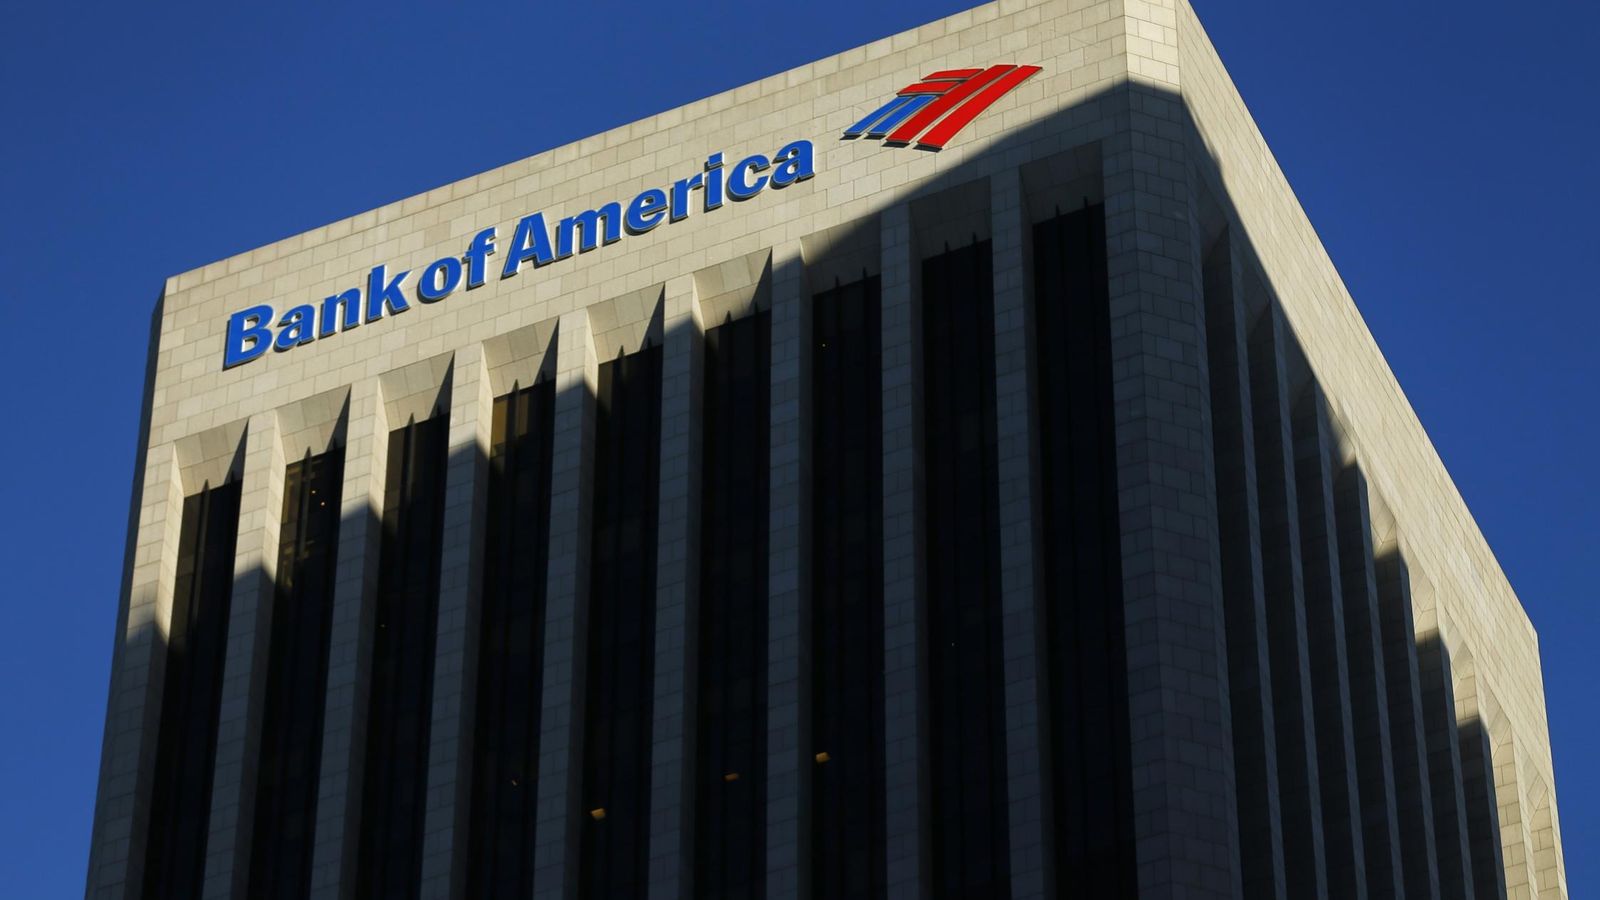 Foto: Edificio de Bak of America Merrill Lynch en Los Ángeles. (Reuters)